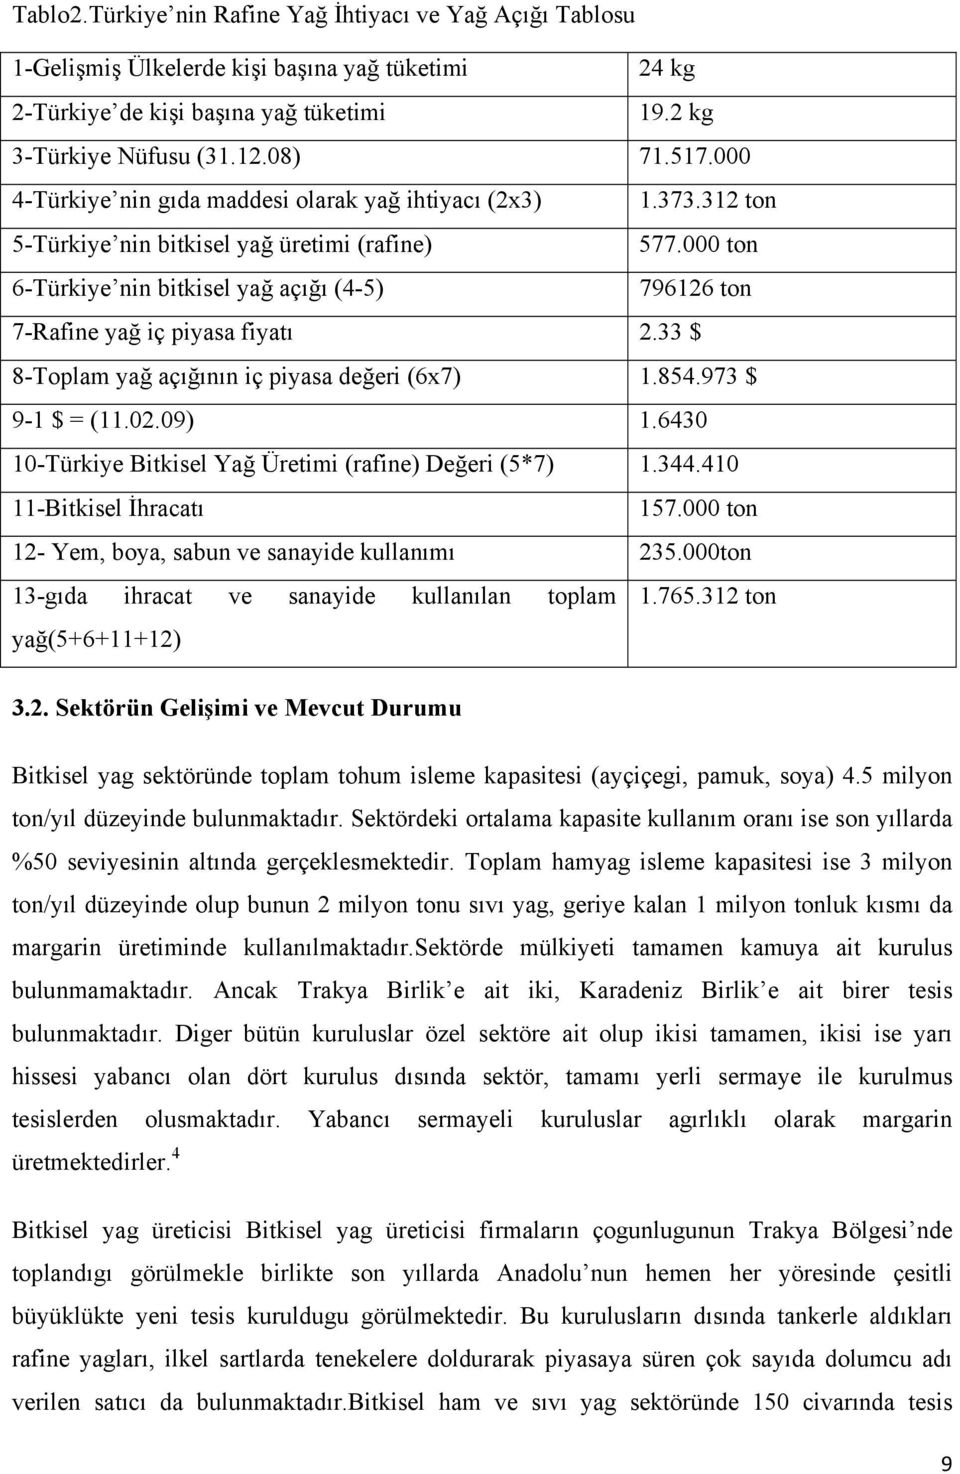 000 ton 6-Türkiye nin bitkisel yağ açığı (4-5) 796126 ton 7-Rafine yağ iç piyasa fiyatı 2.33 $ 8-Toplam yağ açığının iç piyasa değeri (6x7) 1.854.973 $ 9-1 $ = (11.02.09) 1.